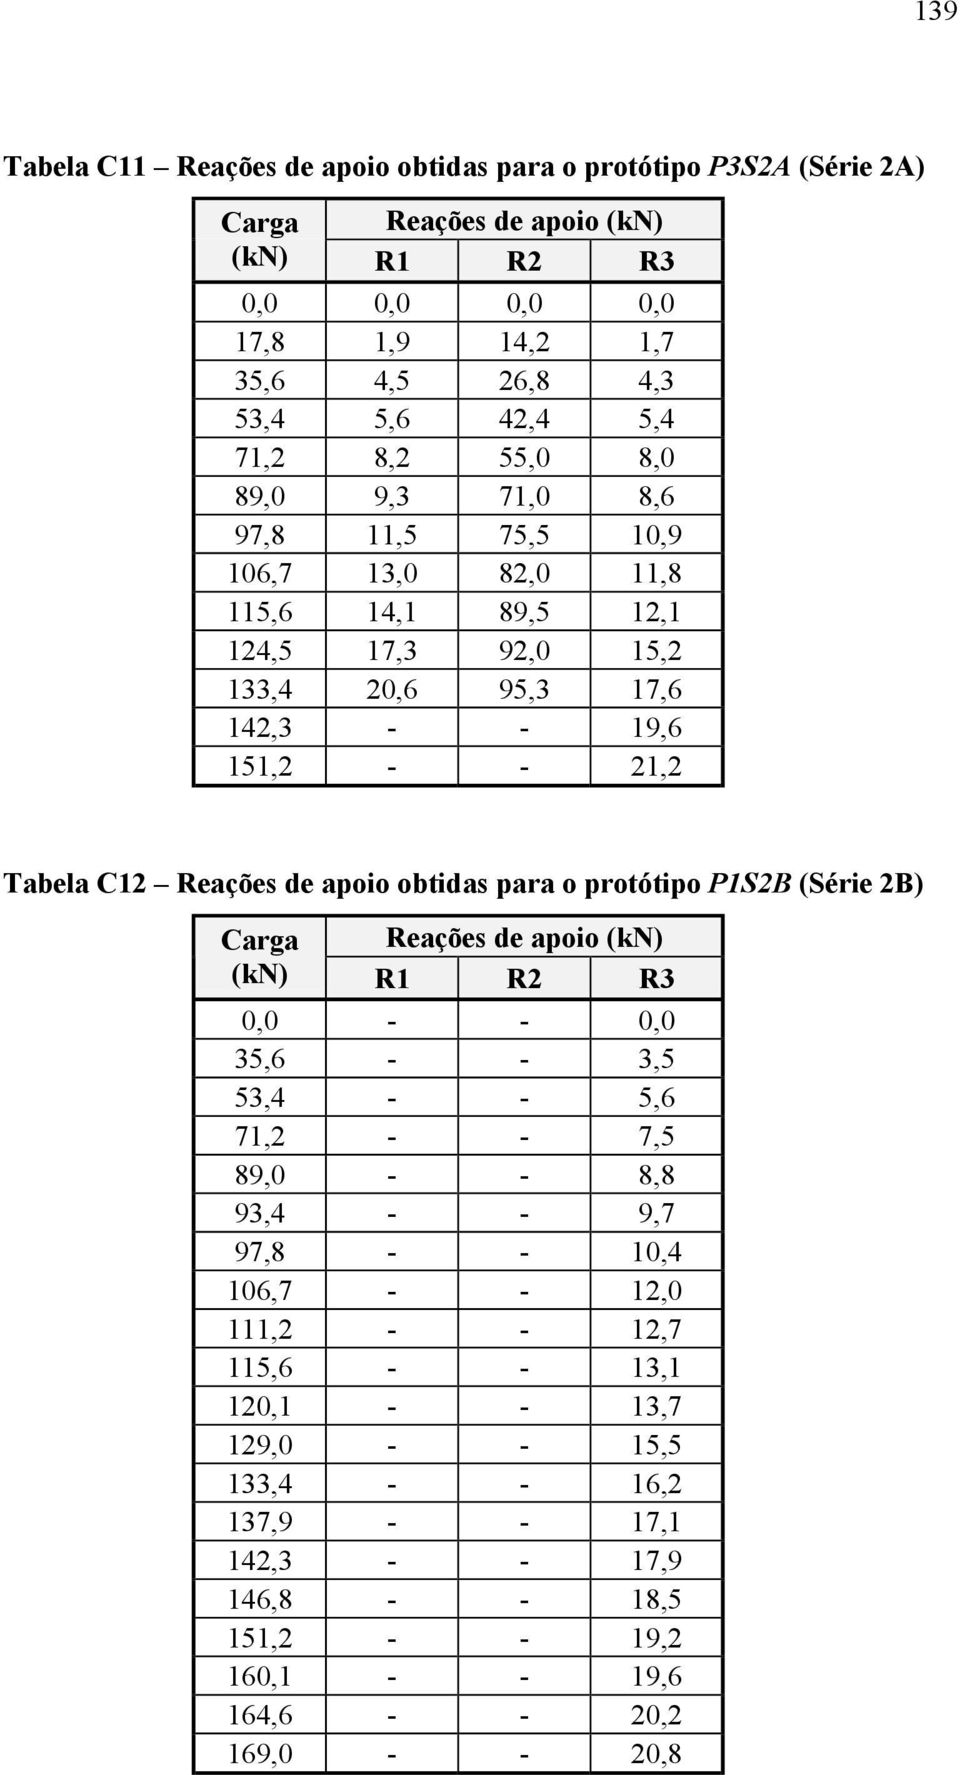 de apoio obtidas para o protótipo P1S2B (Série 2B) Carga Reações de apoio (kn) (kn) R1 R2 R3 0,0 - - 0,0 35,6 - - 3,5 53,4 - - 5,6 71,2 - - 7,5 89,0 - - 8,8 93,4 - - 9,7 97,8 - - 10,4